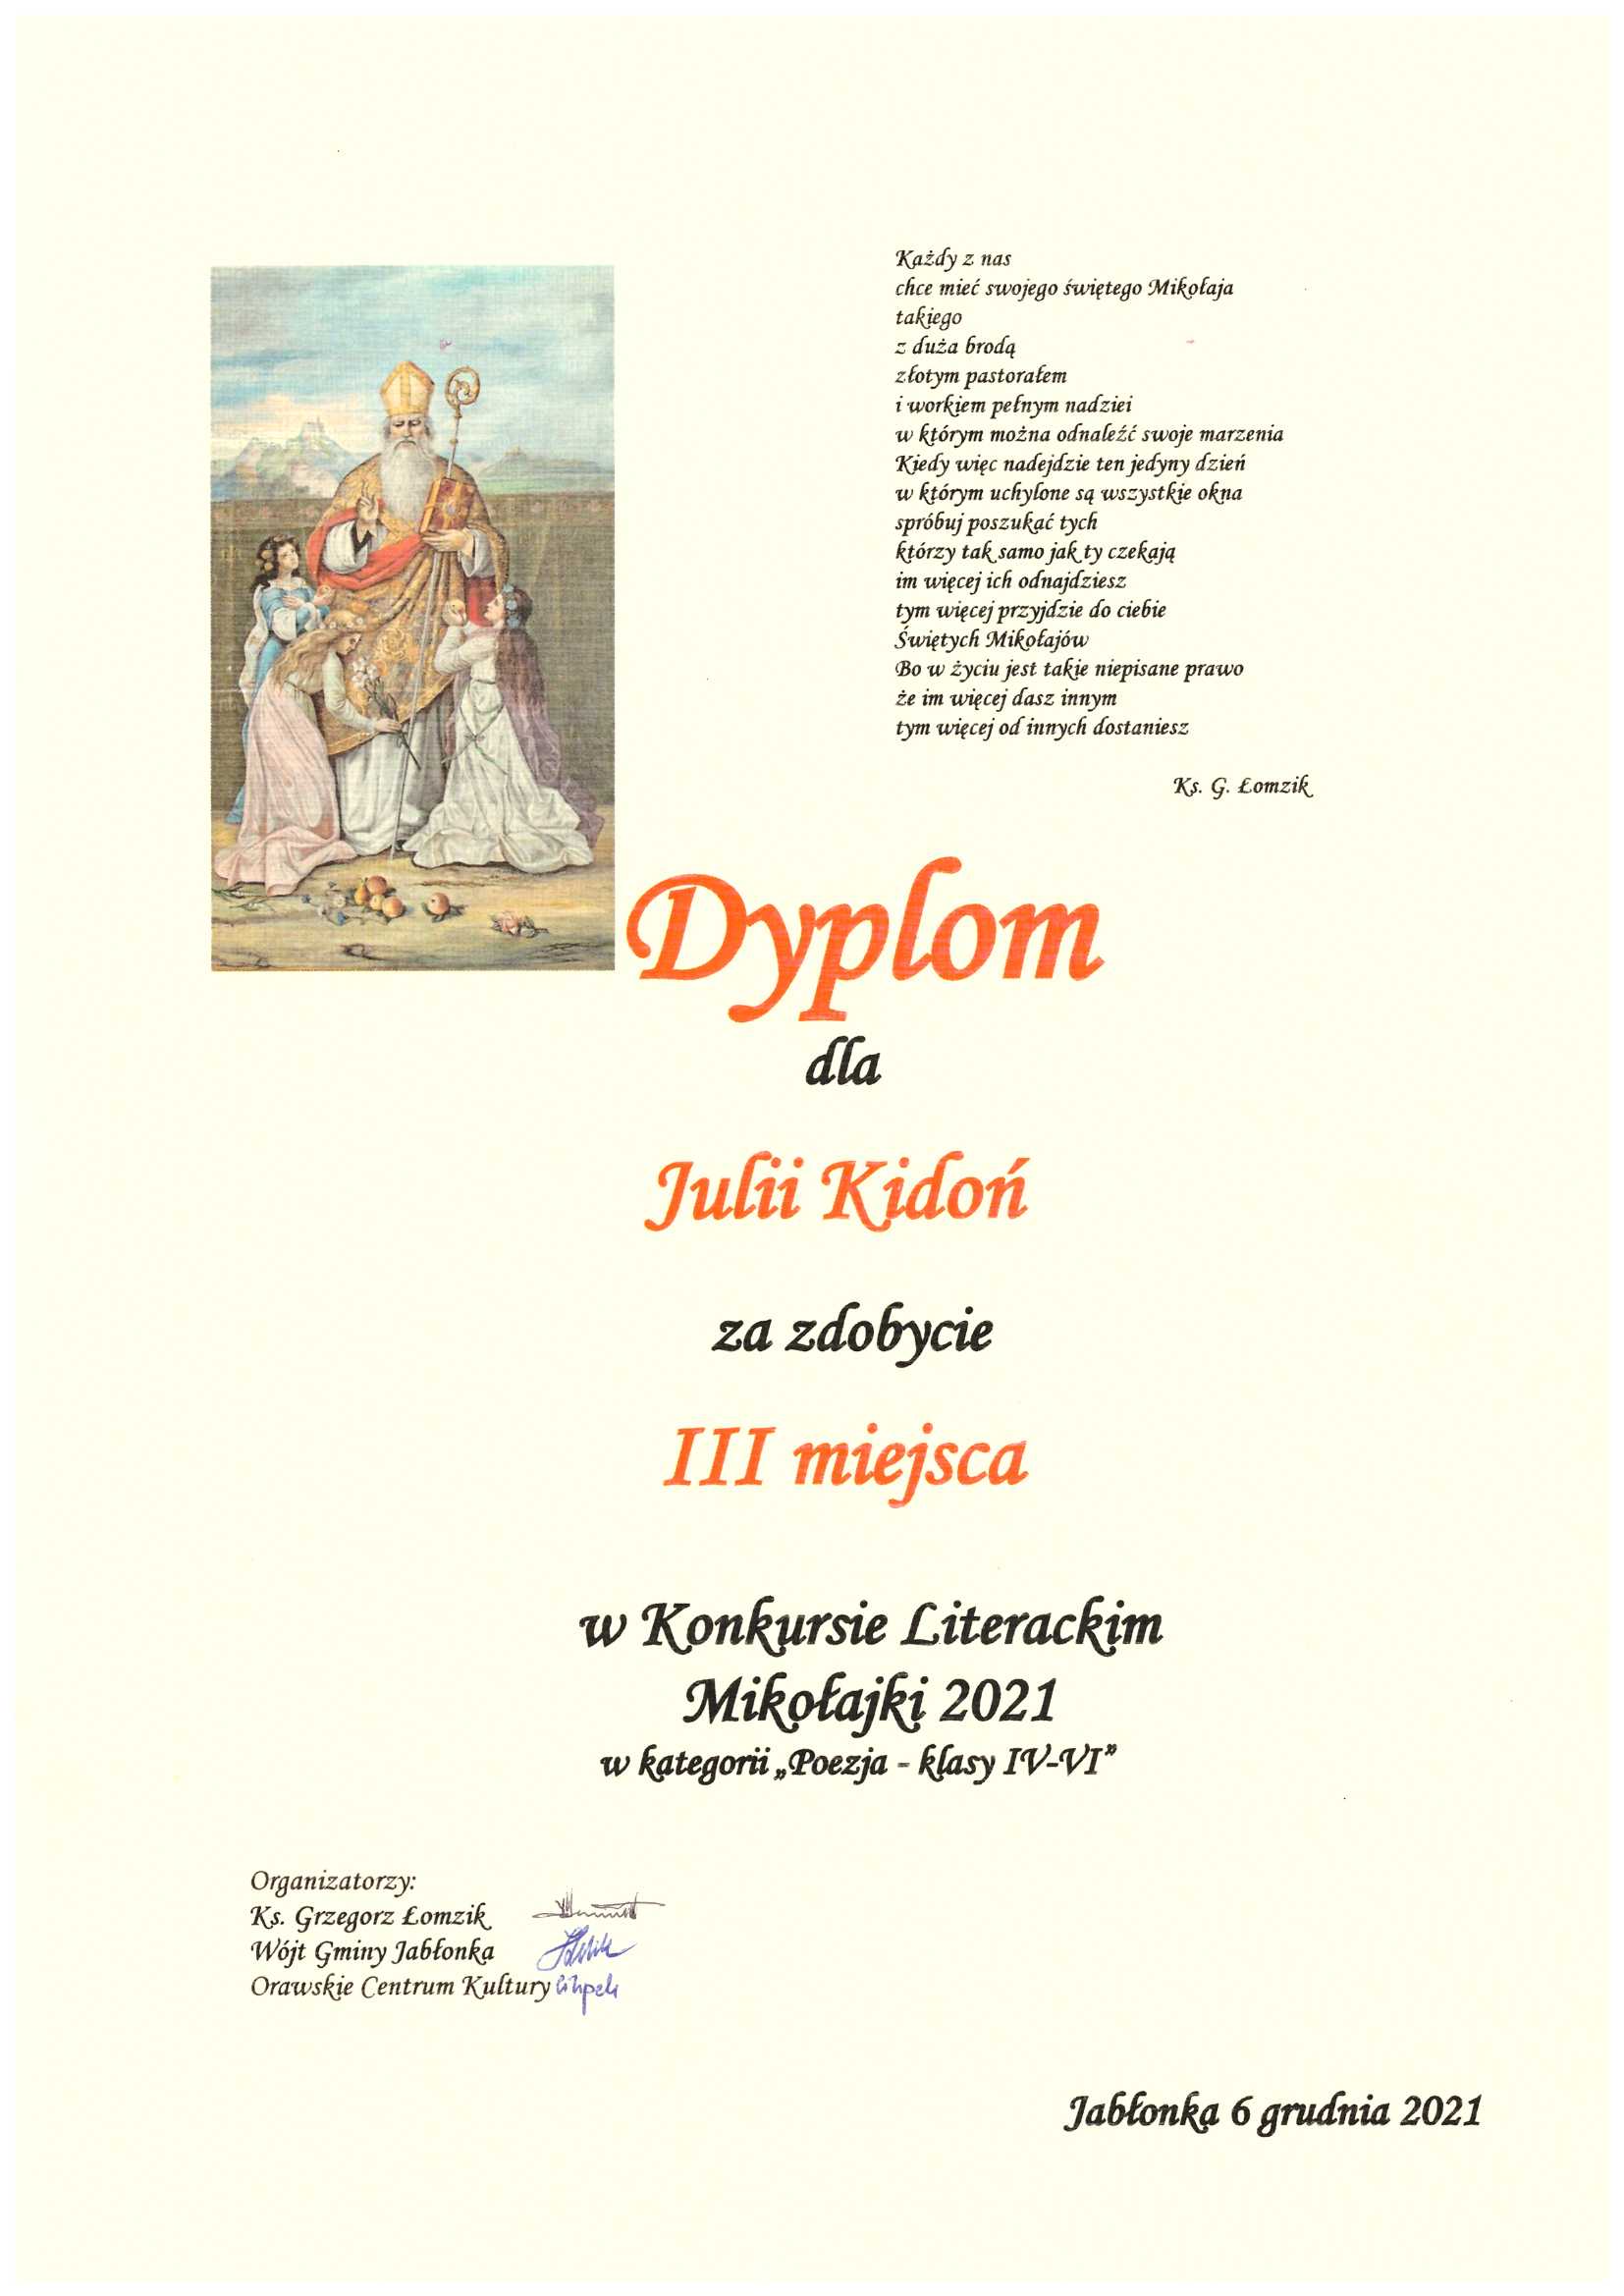 zdjęcie przedstawia dyplom dla Julii Kidoń za III miejsce w konkursie literackim Mikołajki 2021 kategoria poezja klasy IV-VI